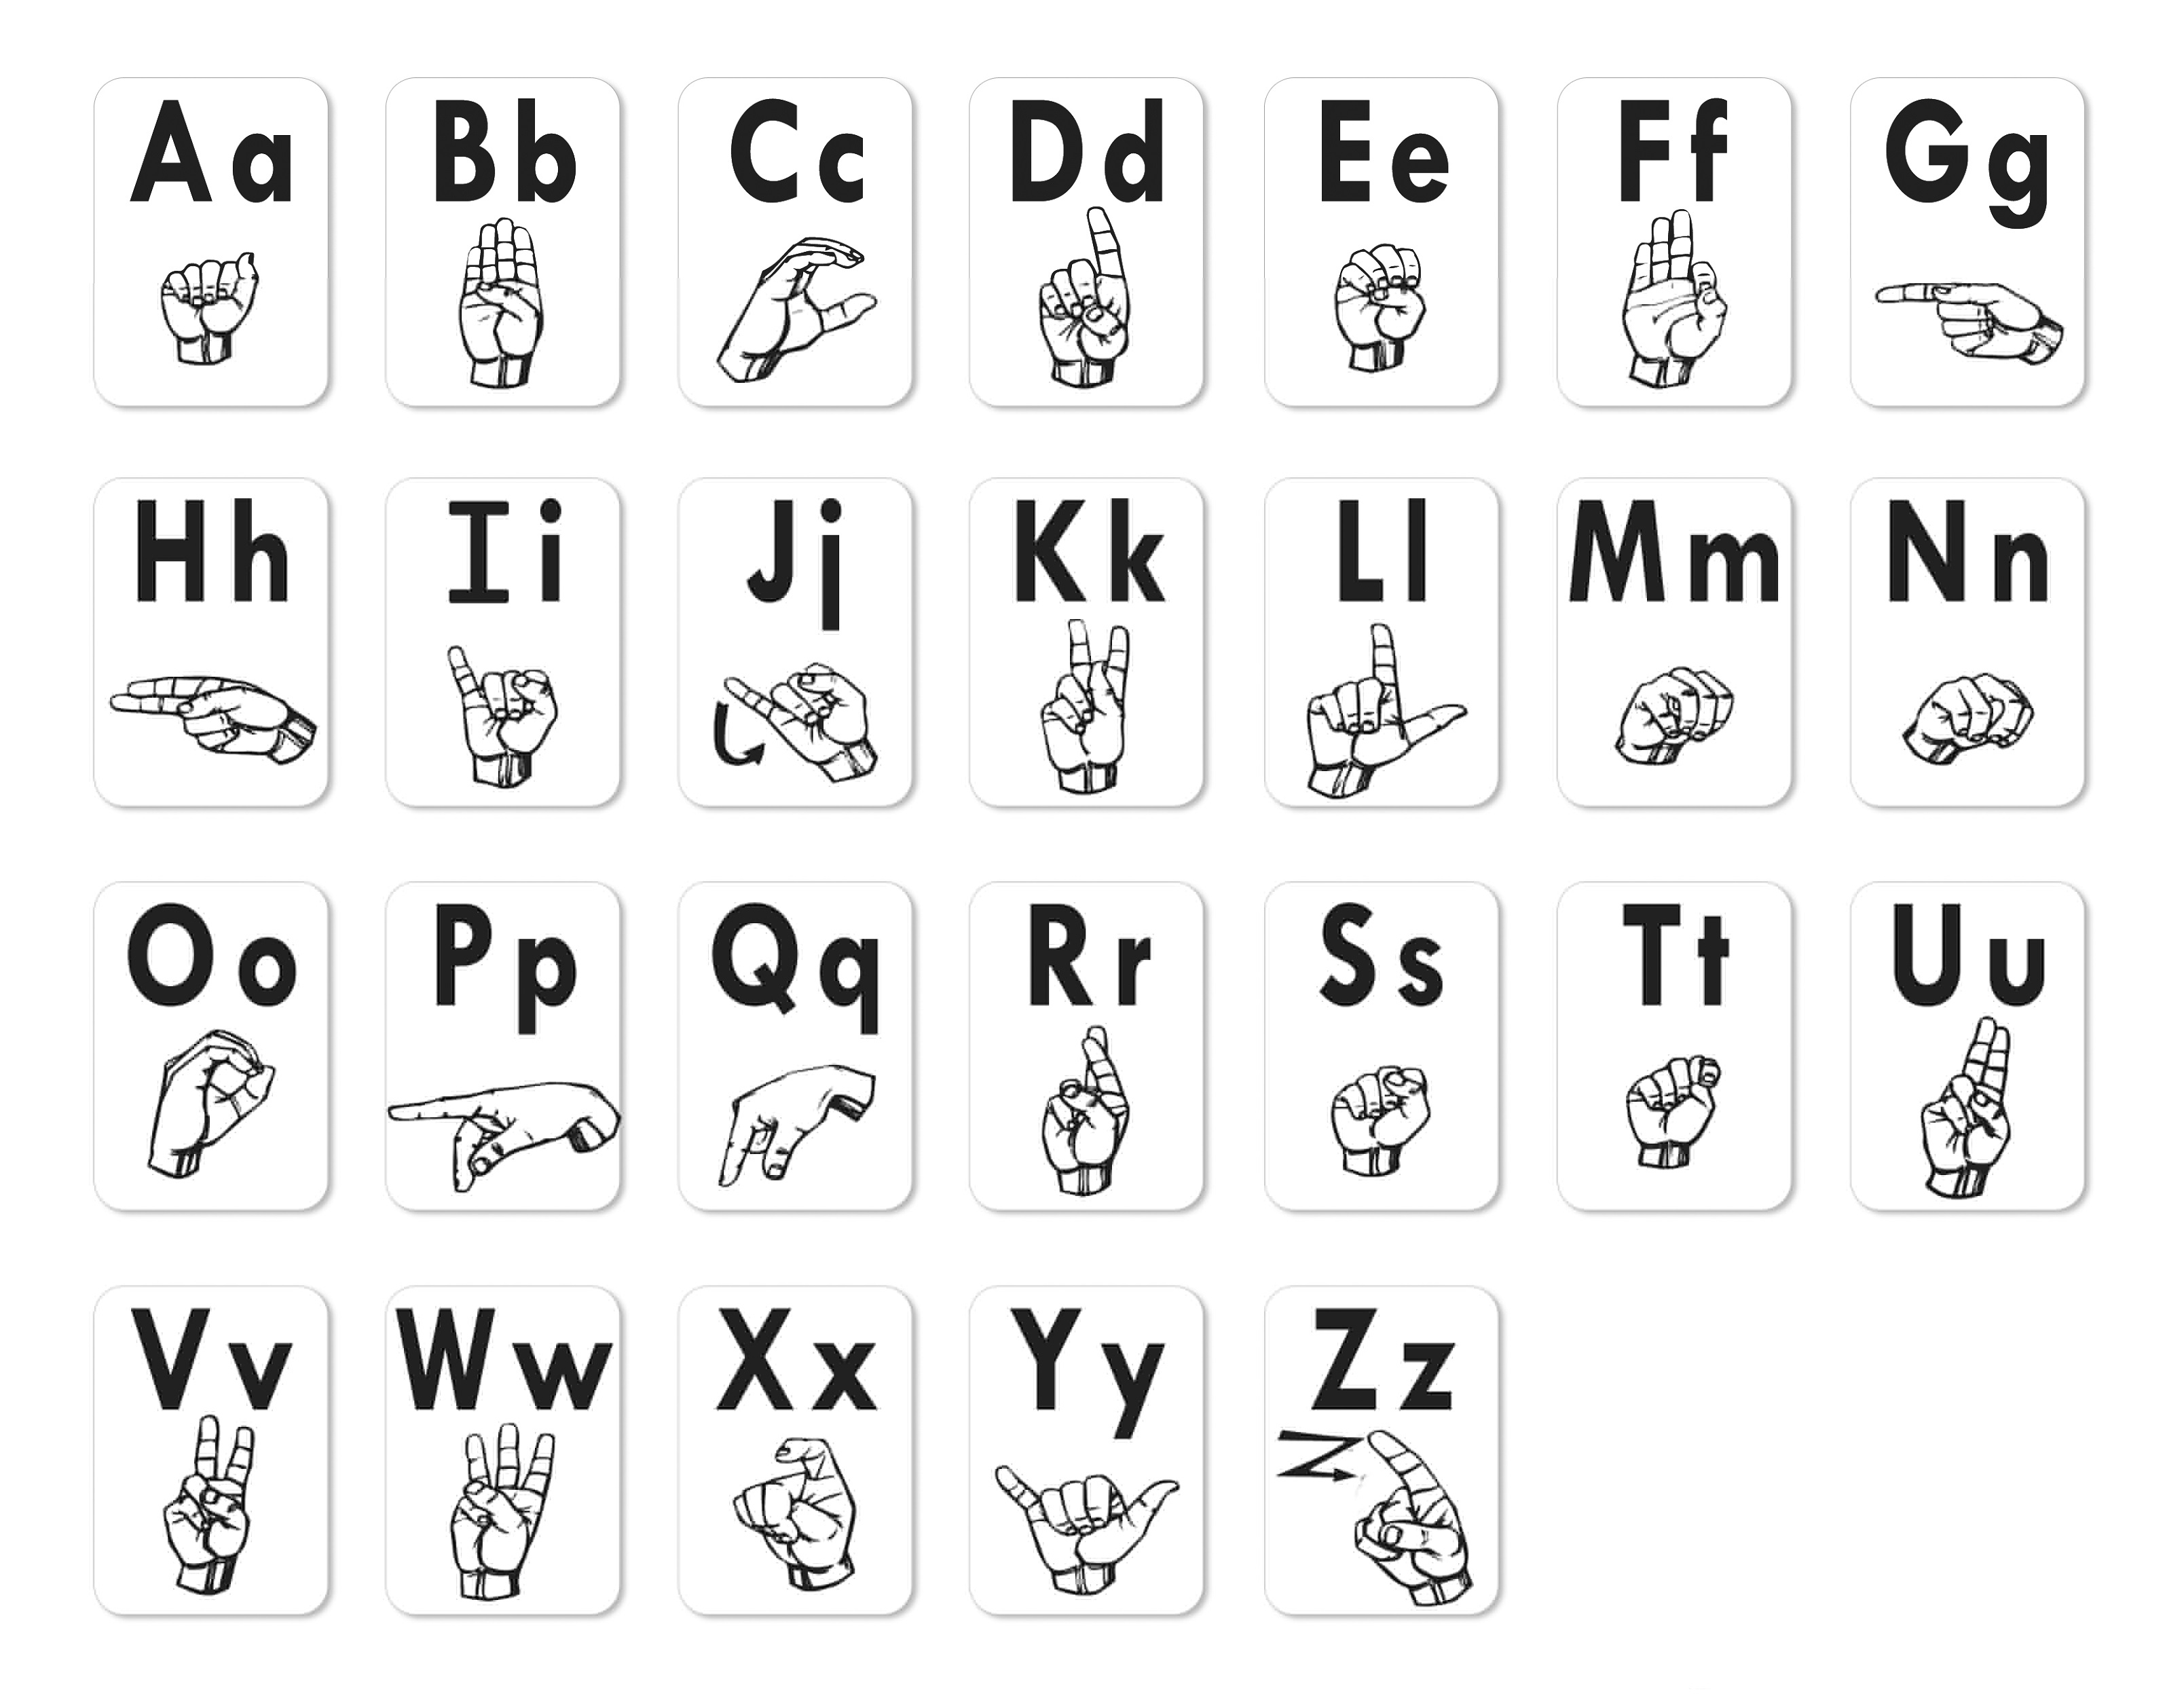 Printable Sign Language Chart